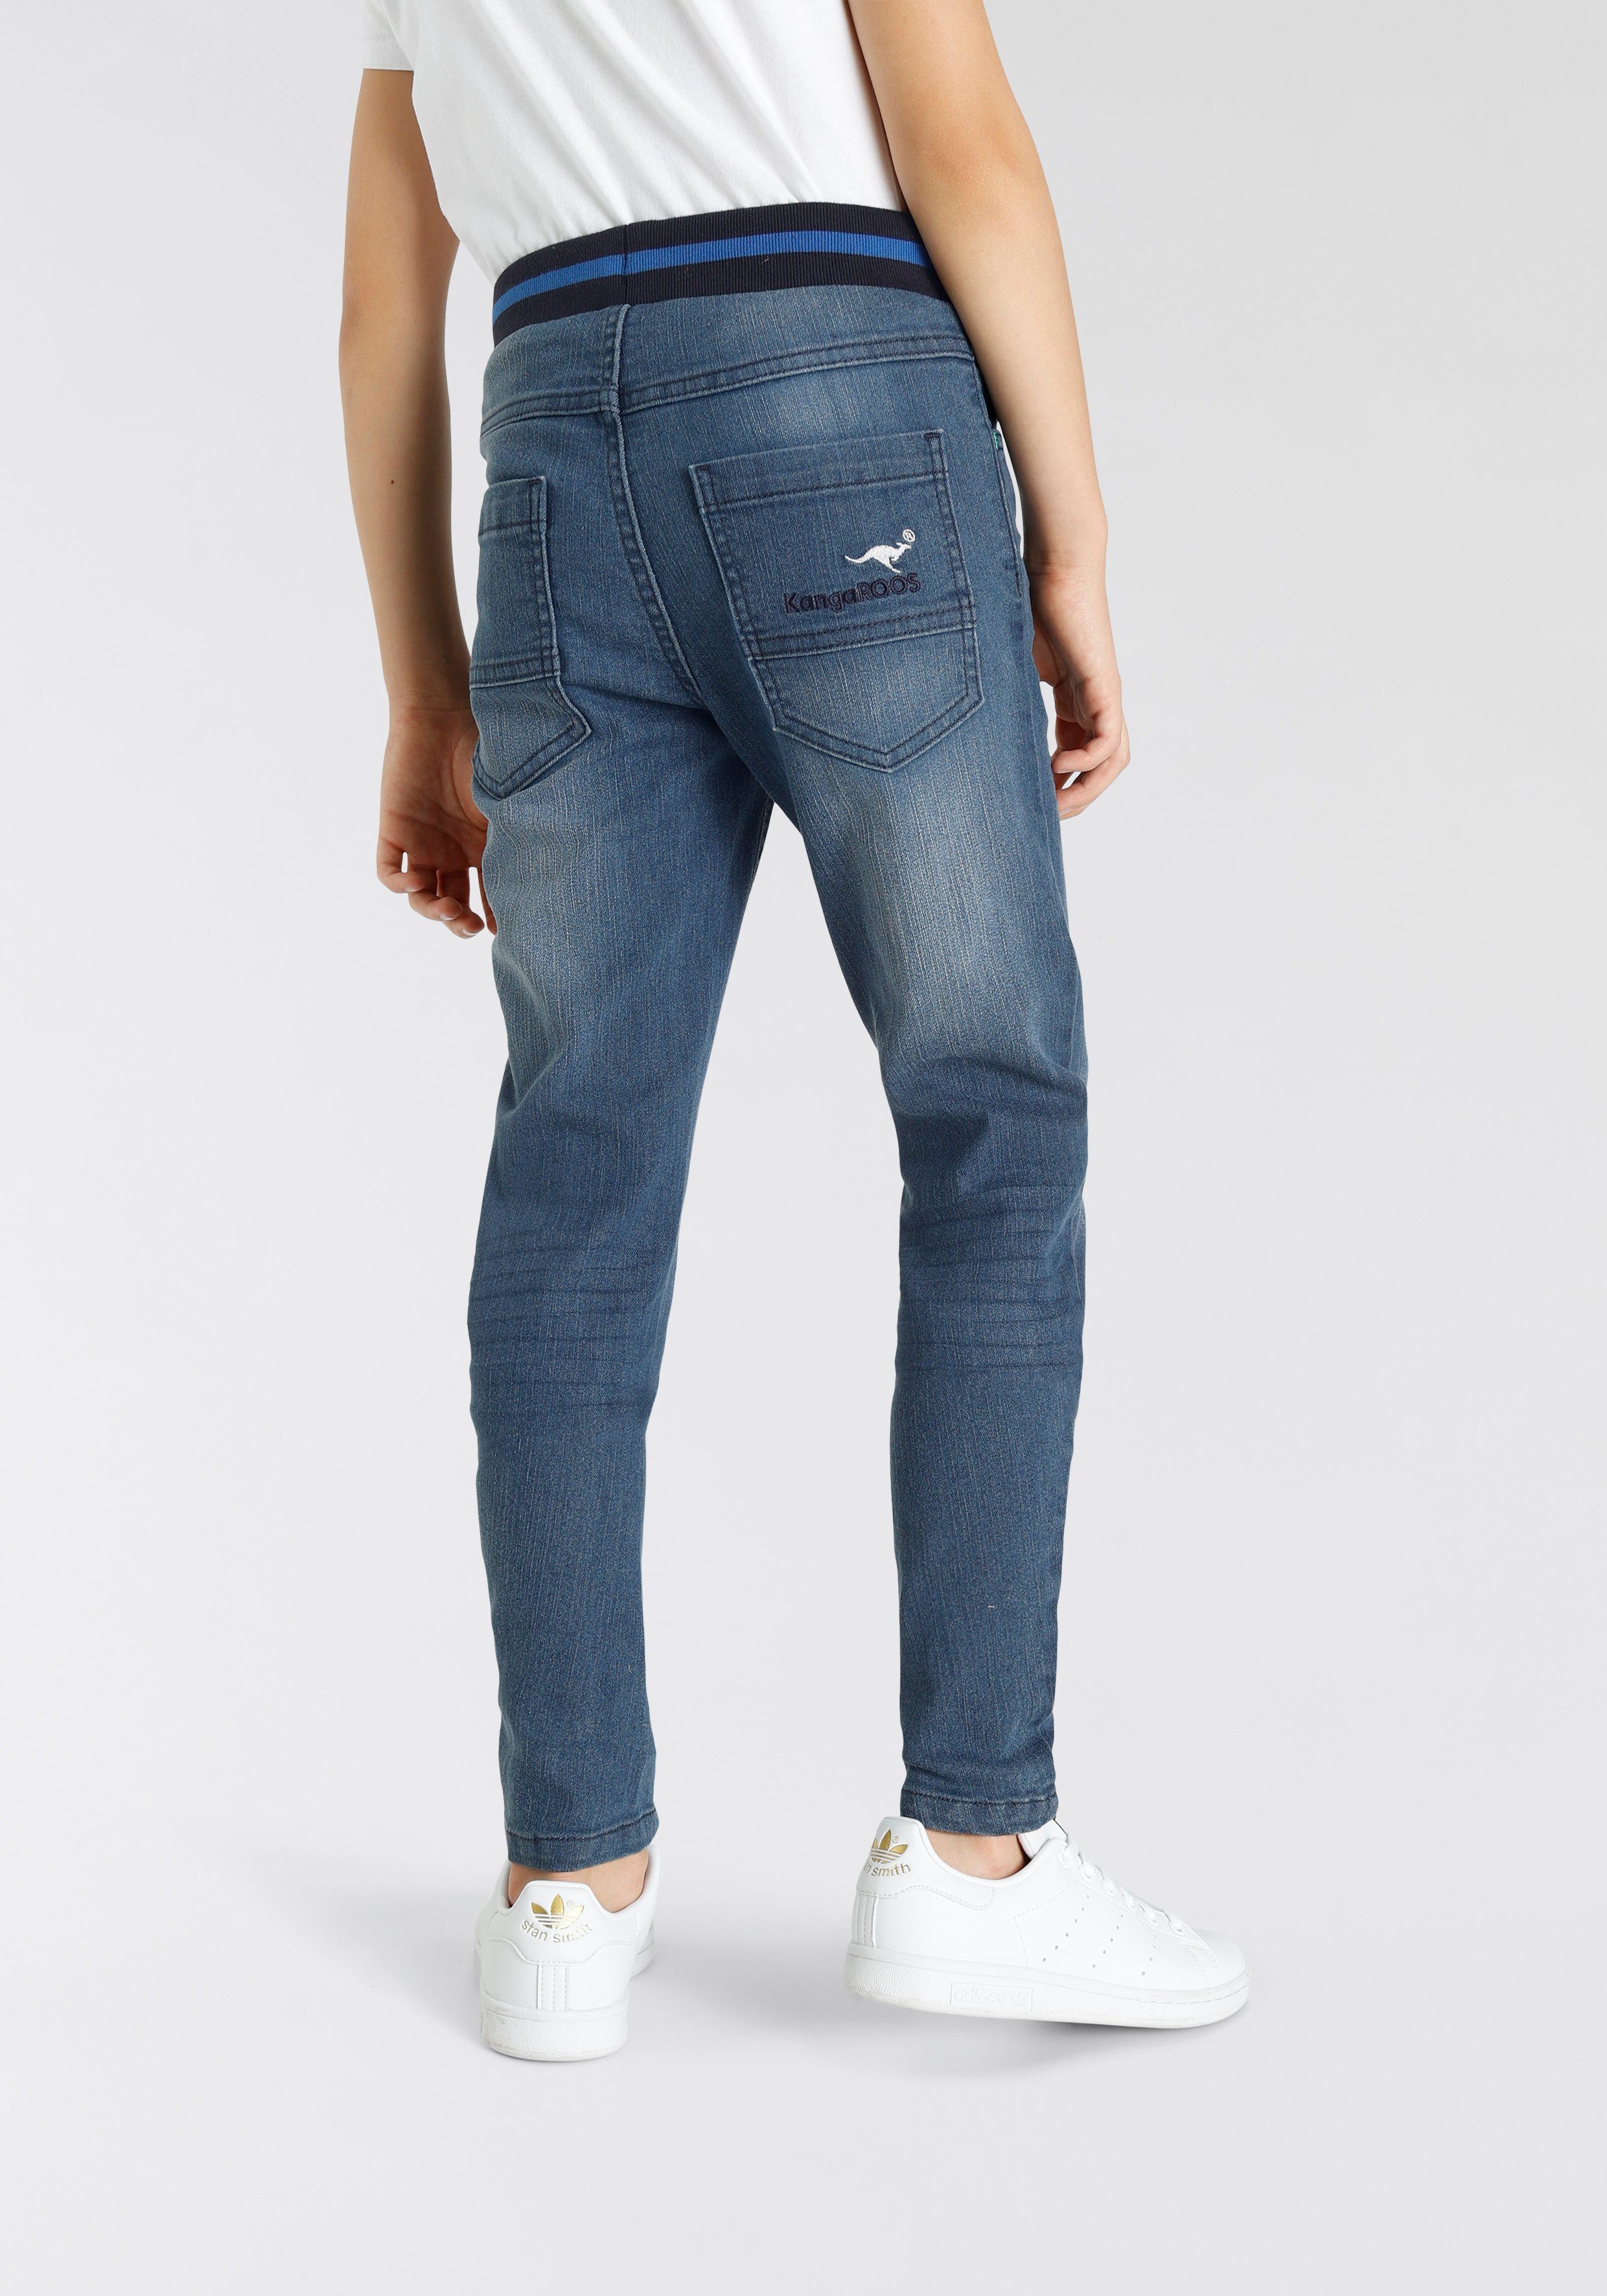 KangaROOS in authentischer Denim Waschung Stretch-Jeans